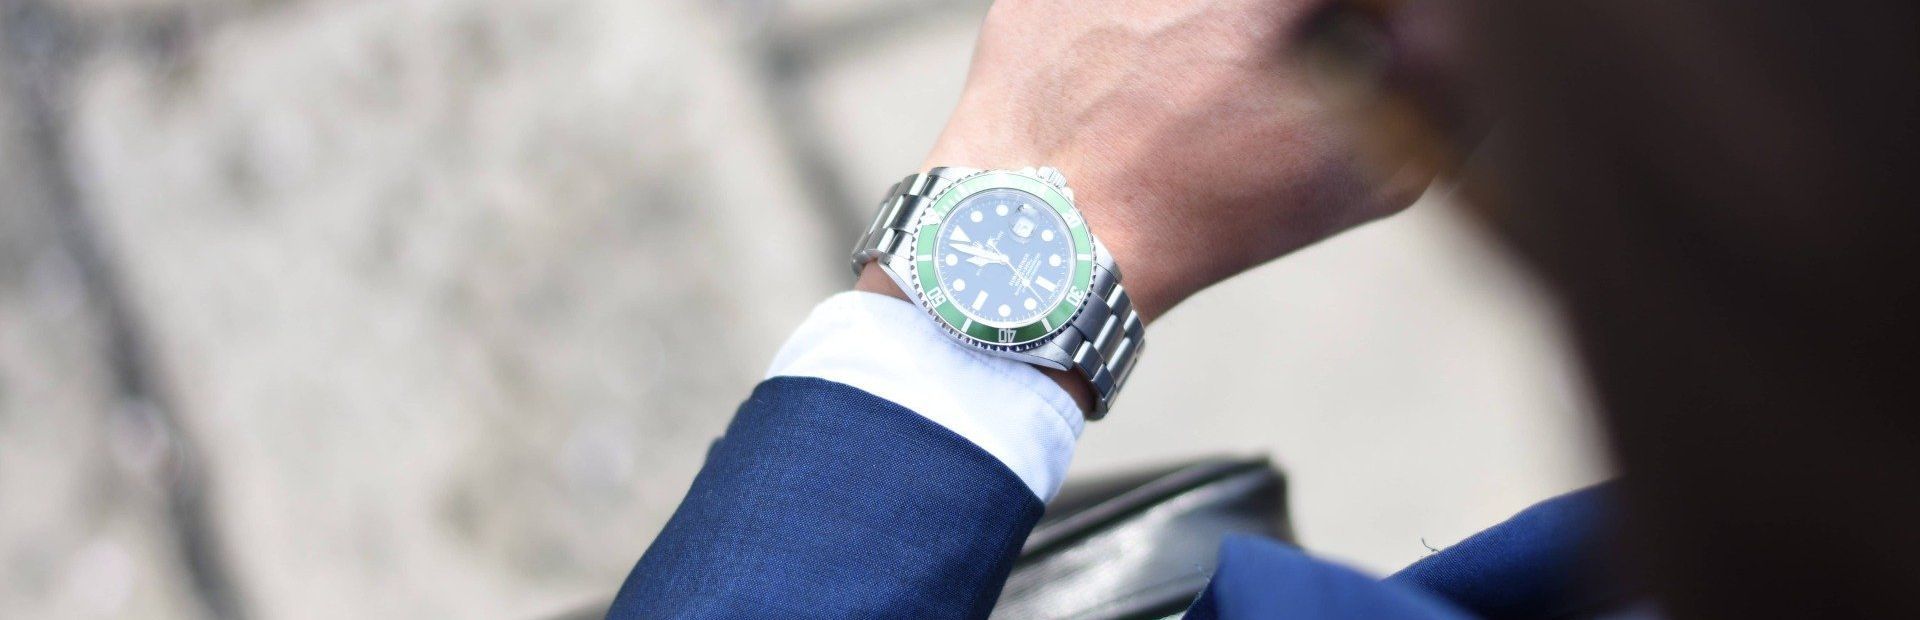 Dirigeant d'entreprise qui regarde sa montre et se pose des questions sur sa gestion du temps